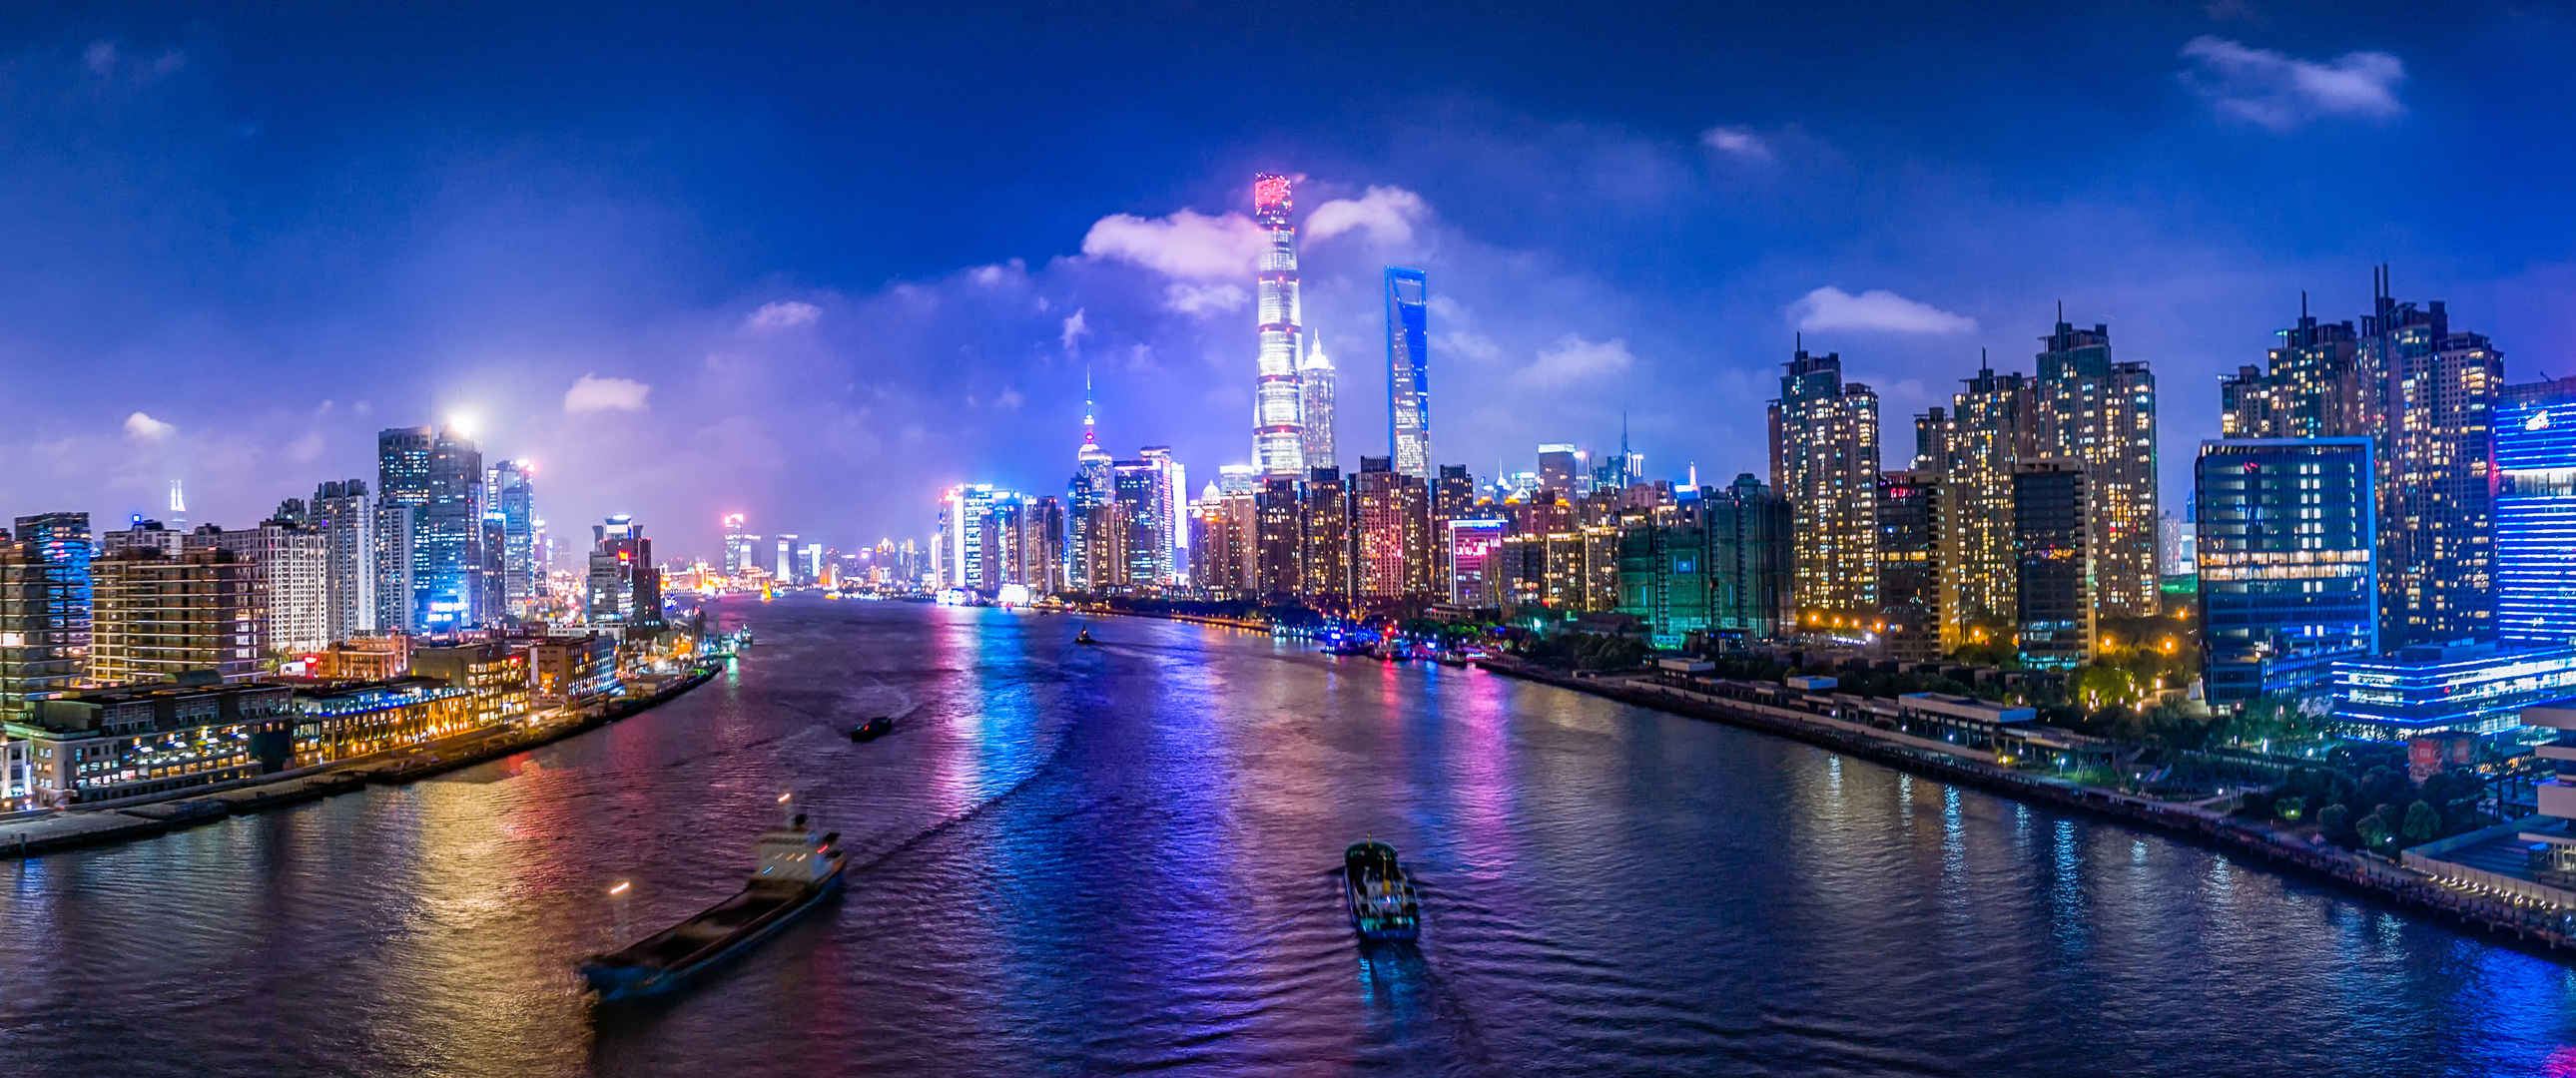 上海黄浦江城市夜景东方明珠3440x1440风景壁纸-